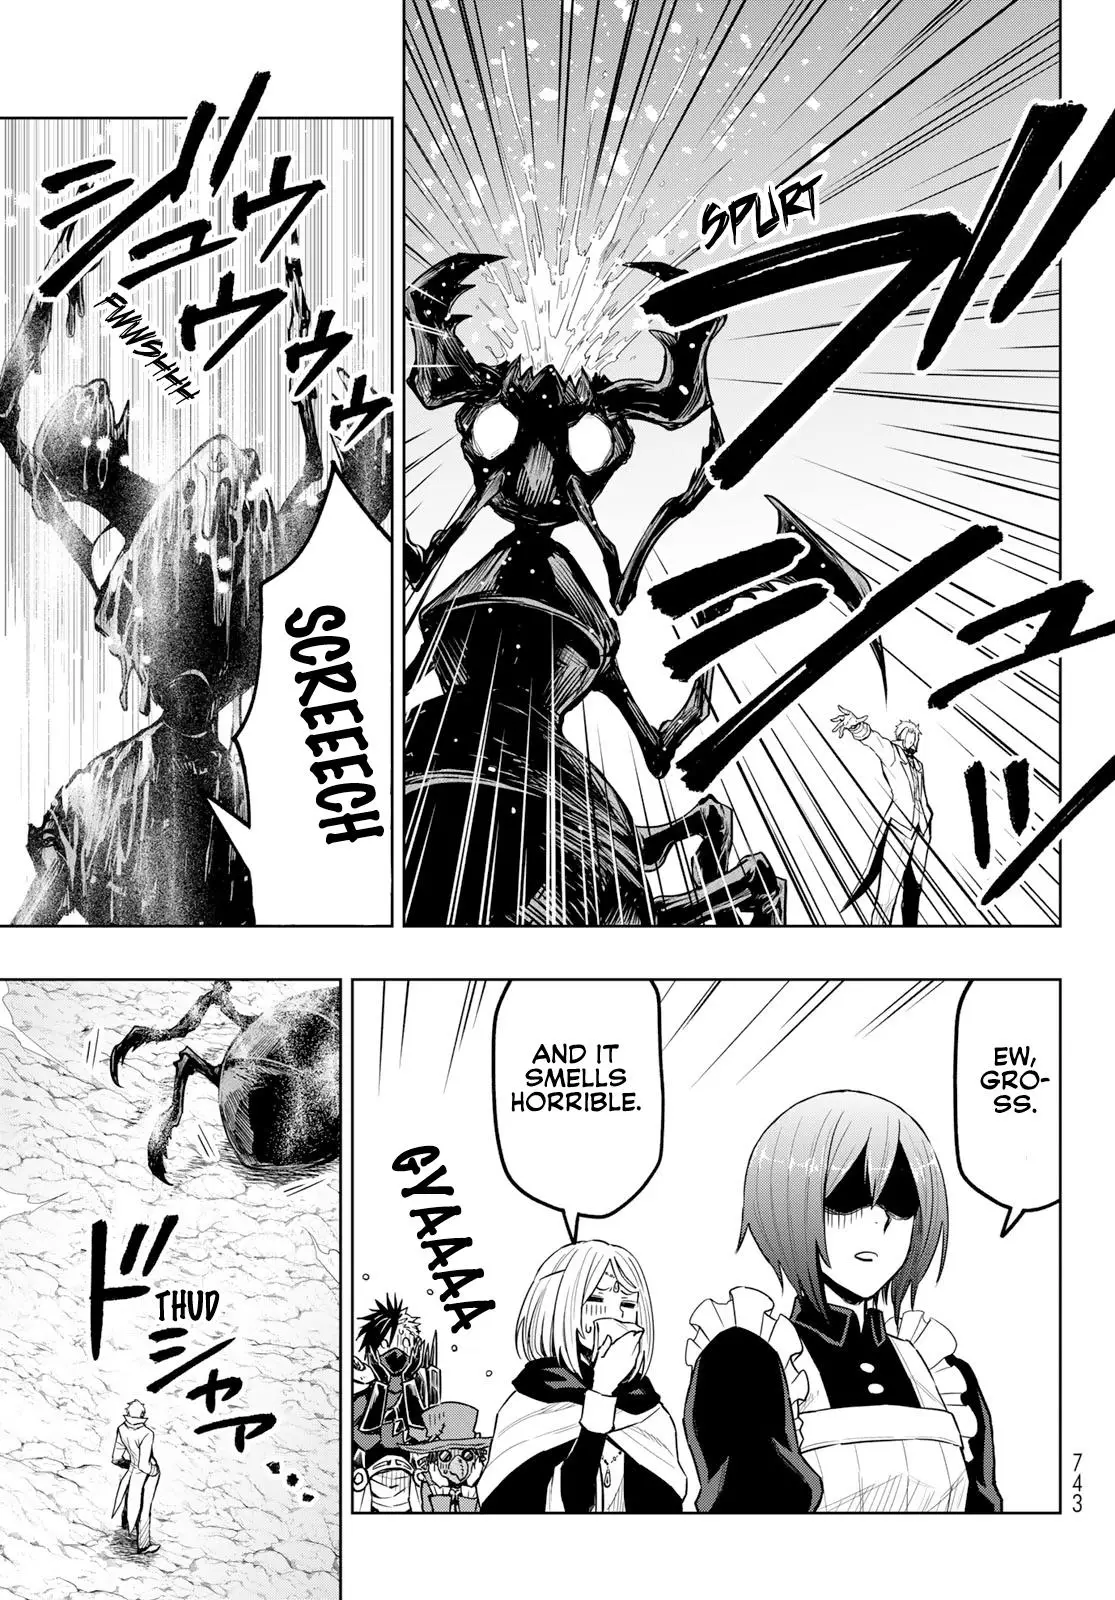 Tensei Shitara Slime Datta Ken: Clayman Revenge - 14 page 13-73b22d80